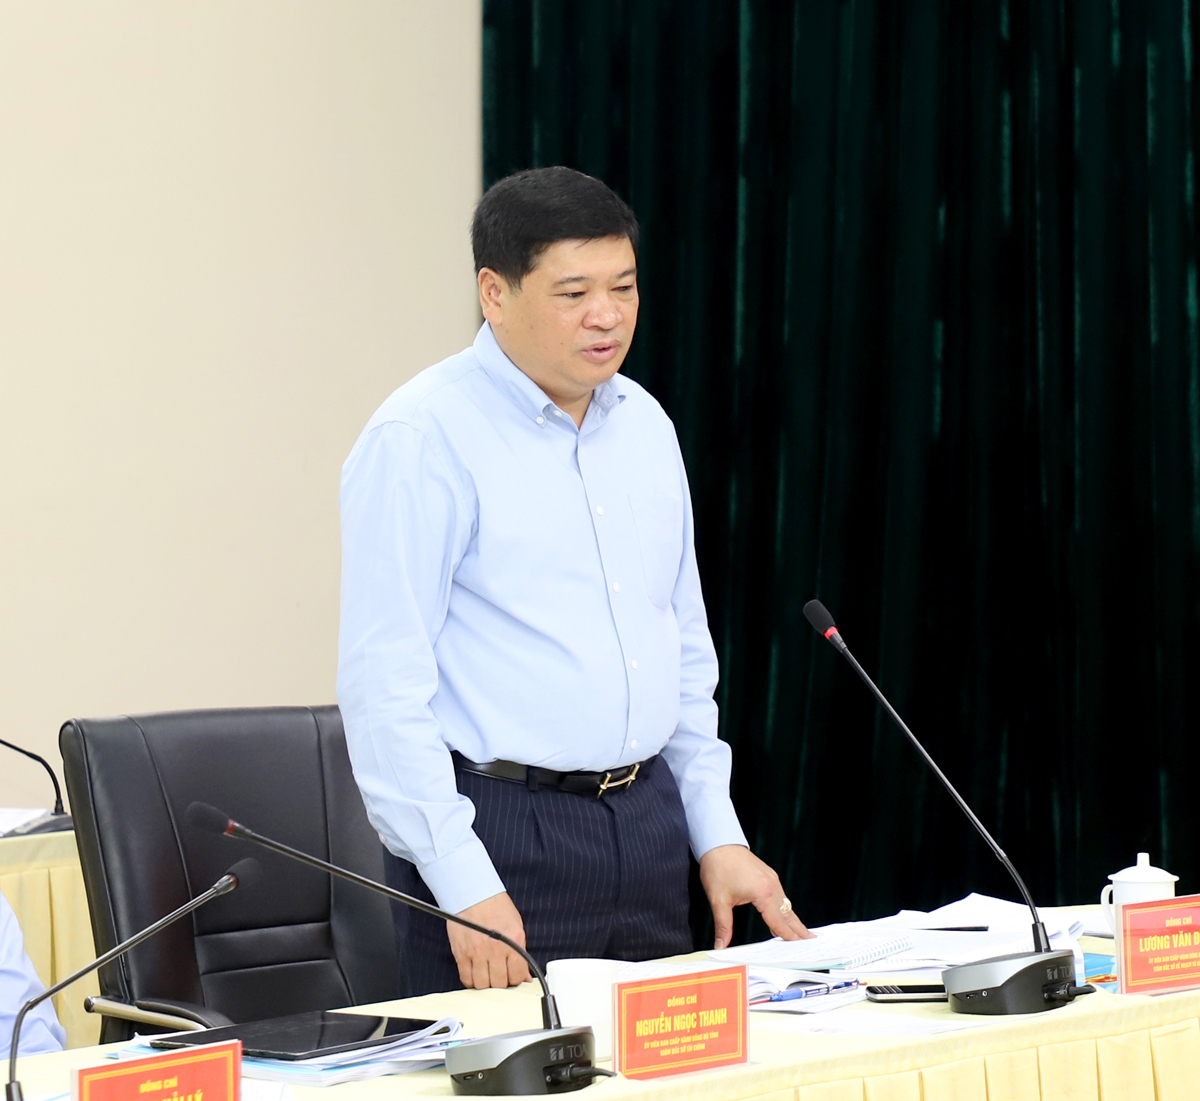 Giám đốc Sở Kế hoạch và Đầu tư Lương Văn Đoàn kiến nghị huyện Bắc Quang triển khai thực hiện các tiêu chí xây dựng NTM bảo đảm tính bền vững.